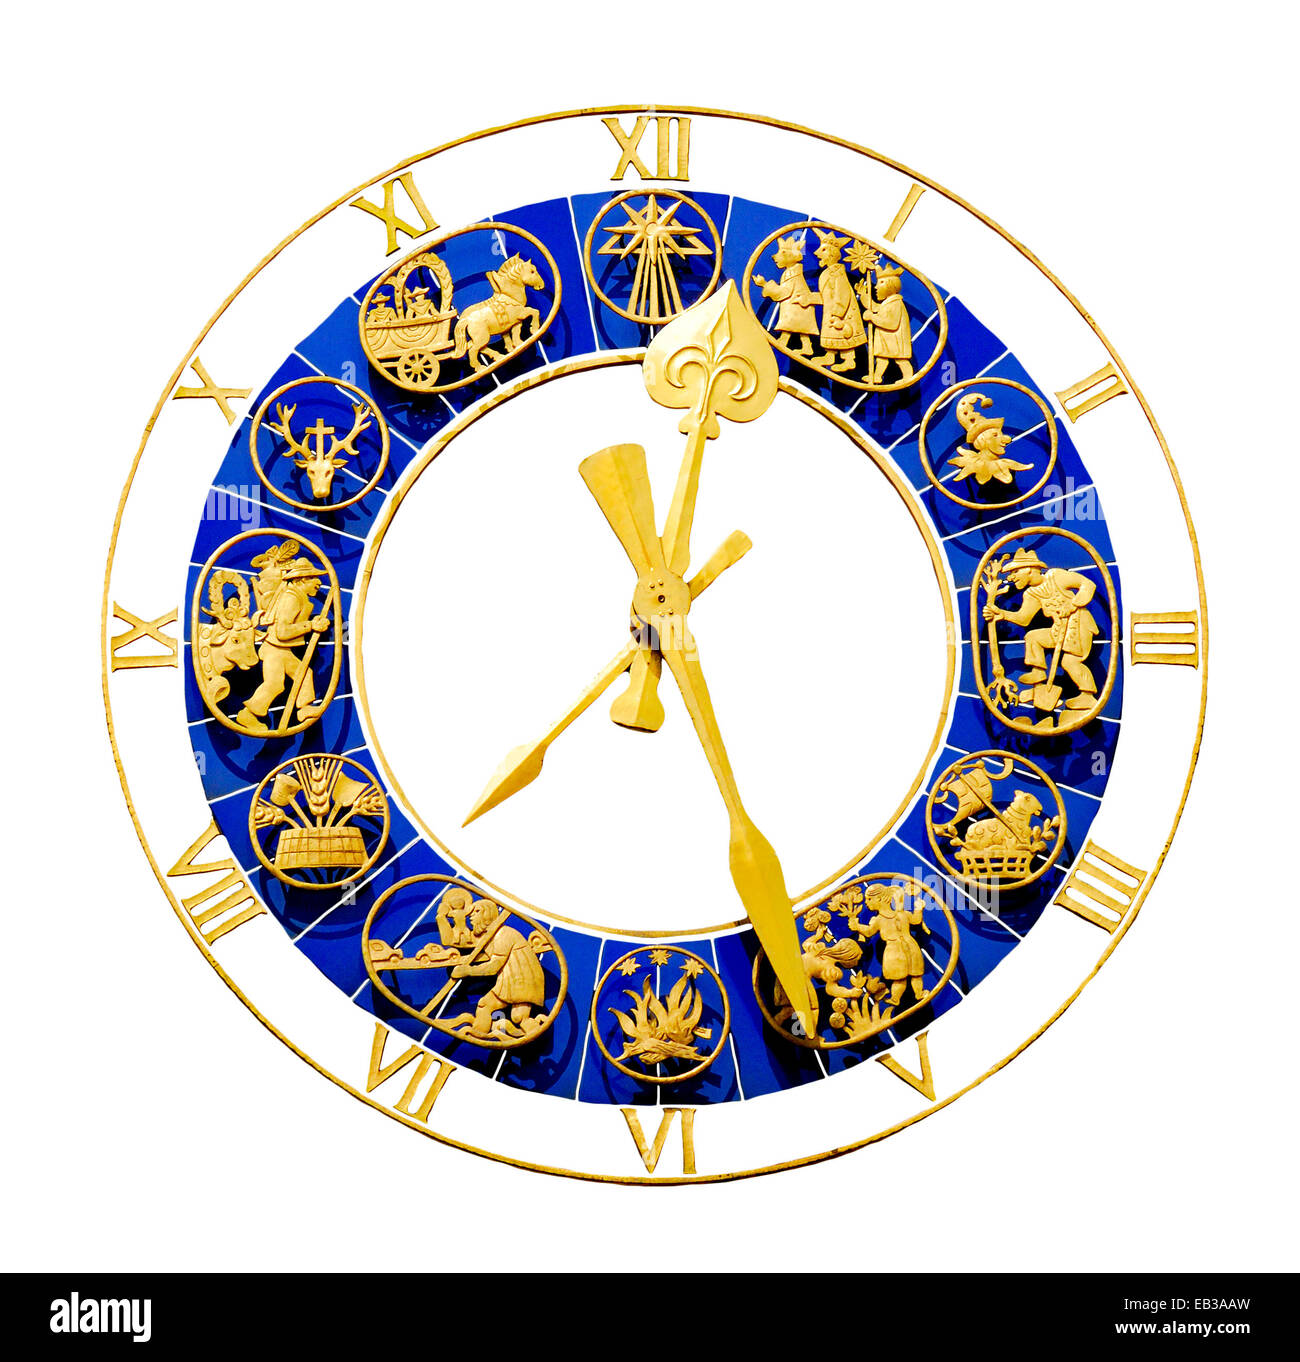 München, Bayern, Deutschland. Dekorative Uhr auf dem Turm des Altes Rathaus / altes Rathaus, Marienplatz. Digital ausgeschnitten Stockfoto